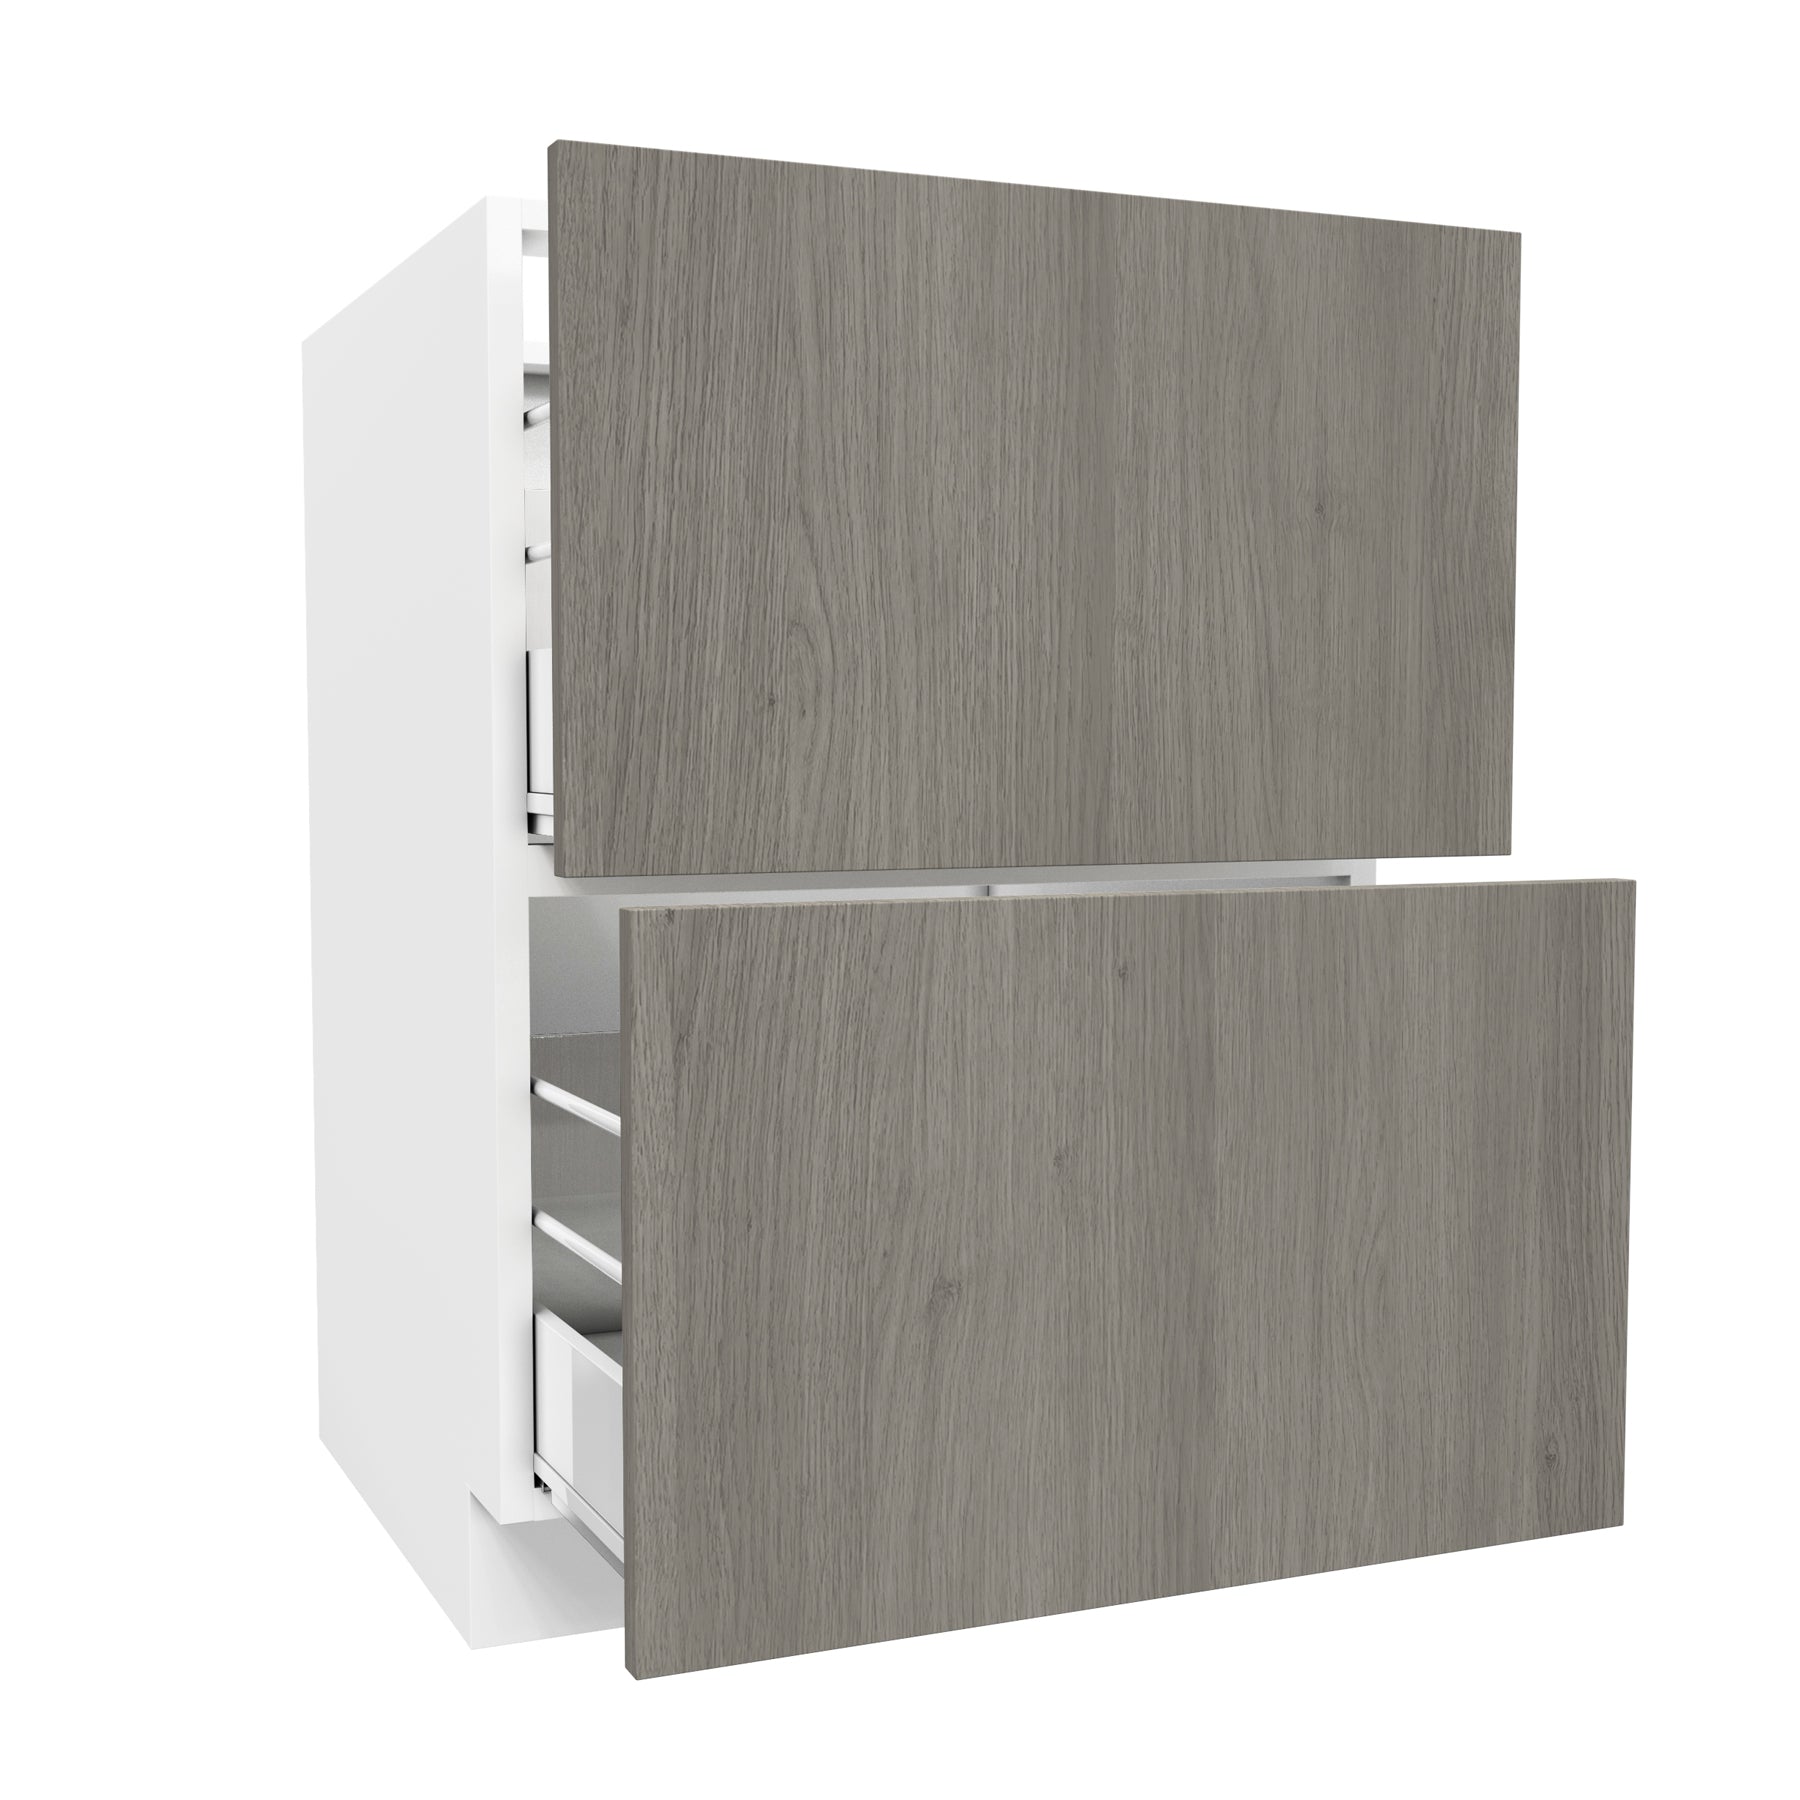 2 Drawer Base Cabinet| Matrix Silver | 24W x 34.5H x 24D